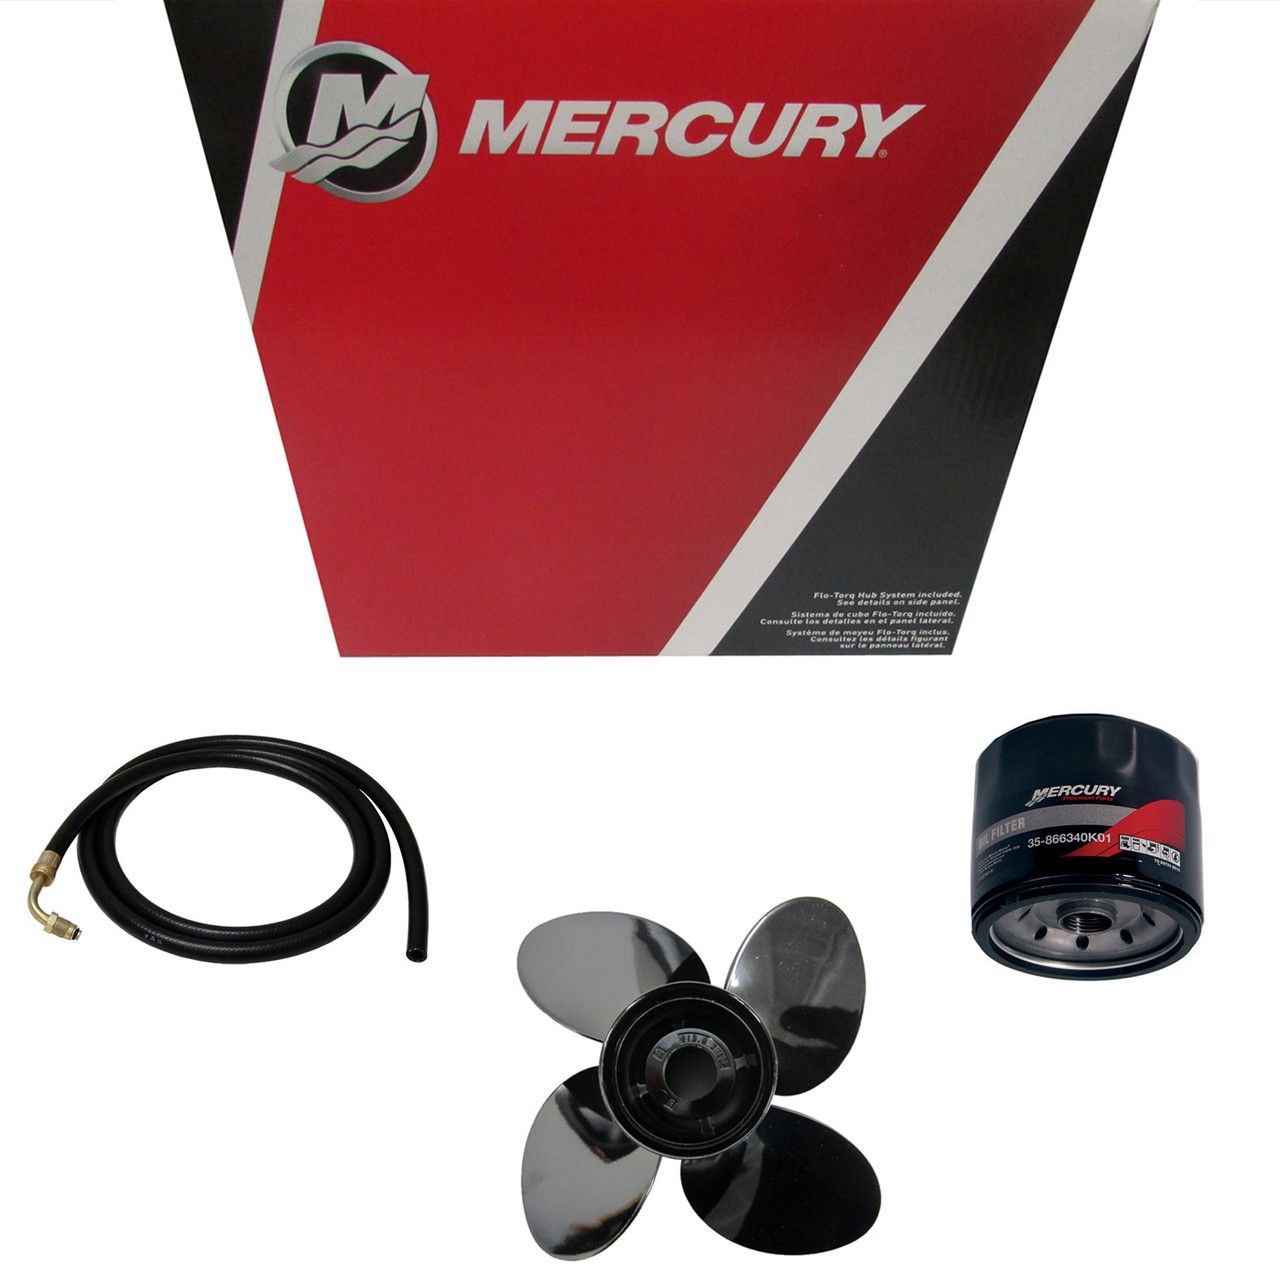 Mercury Marine / Mercruiser New OEM Rev4 14.6X17 Lh, 48-8M0151316